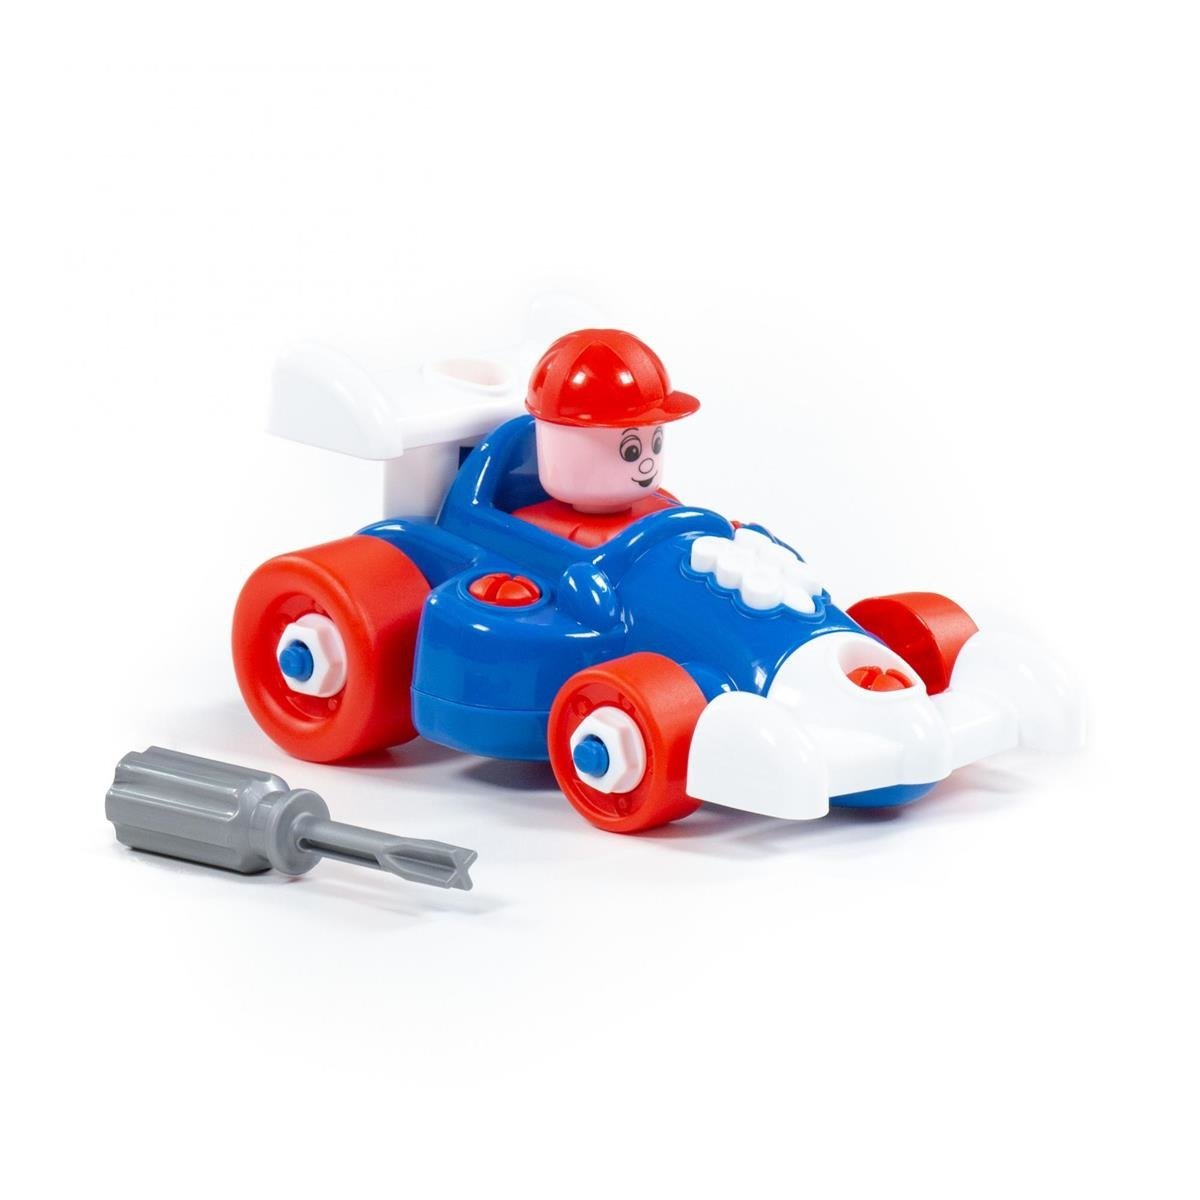 Dječija igračka trkački automobil rasklopivi sort Polesie